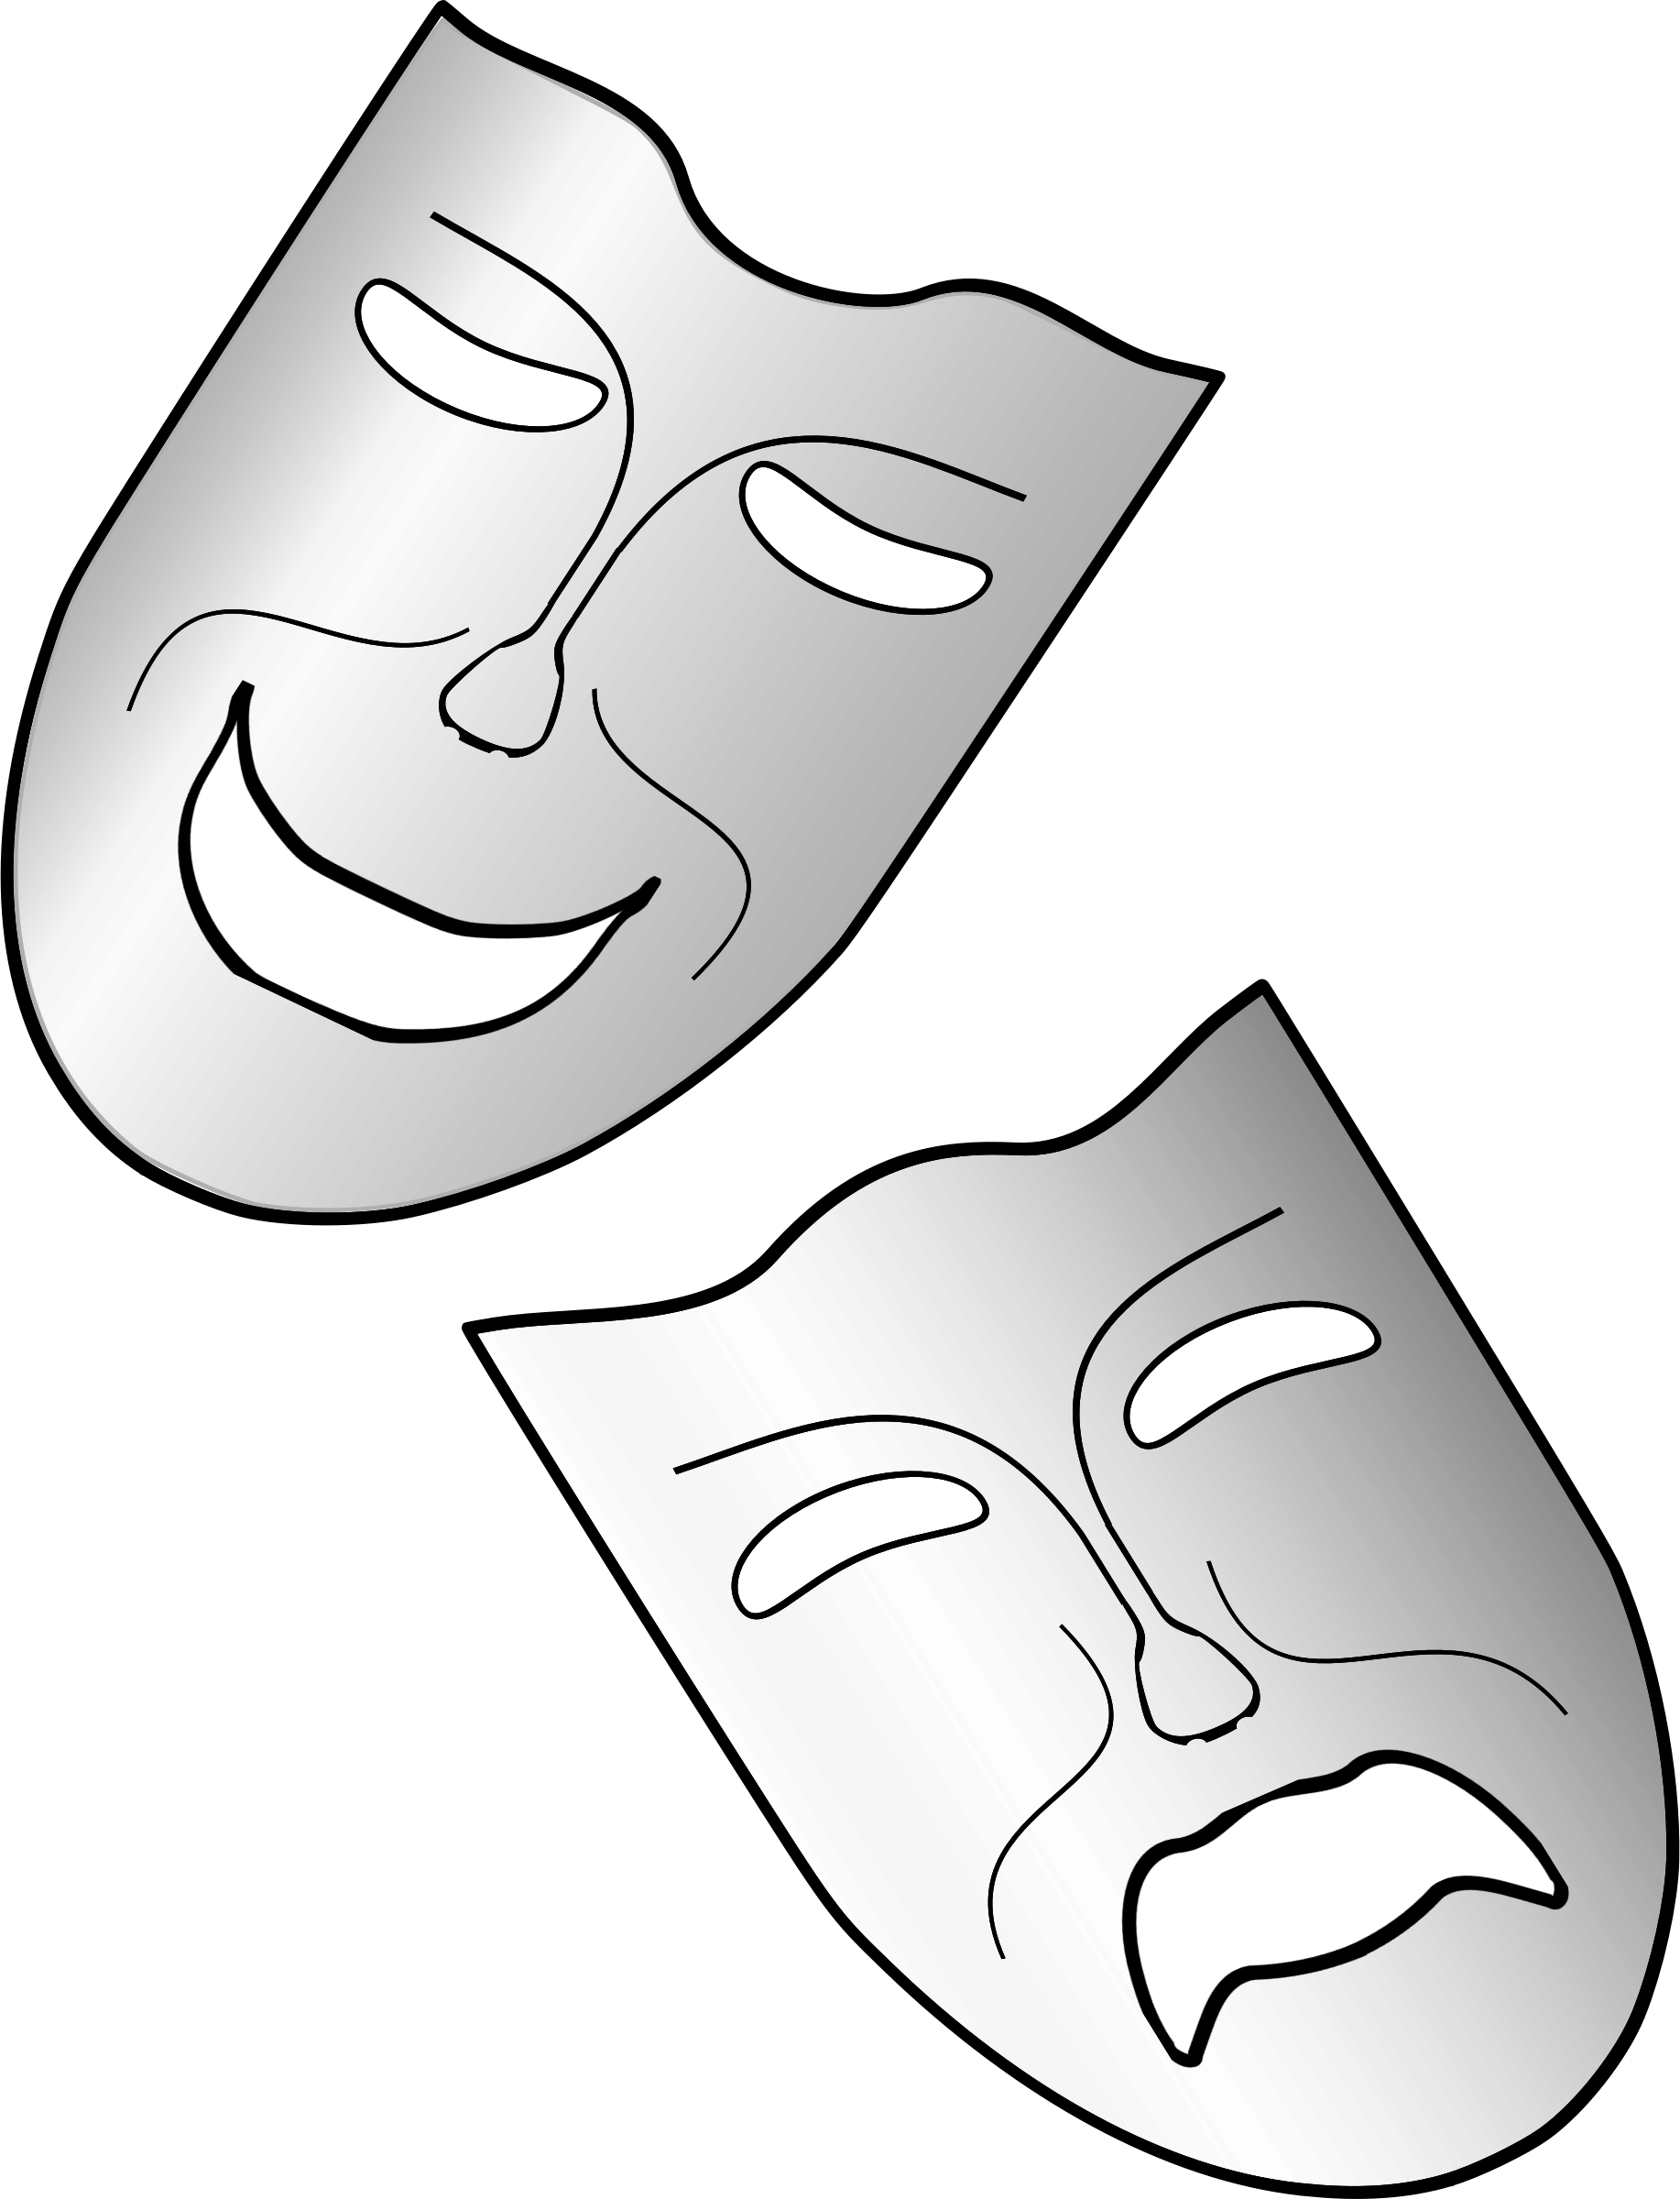 Театральная маска для печати. Театральные маски. Театральная маска трафарет. Театральная маска раскраска. Театральные маски раскраски для детей.